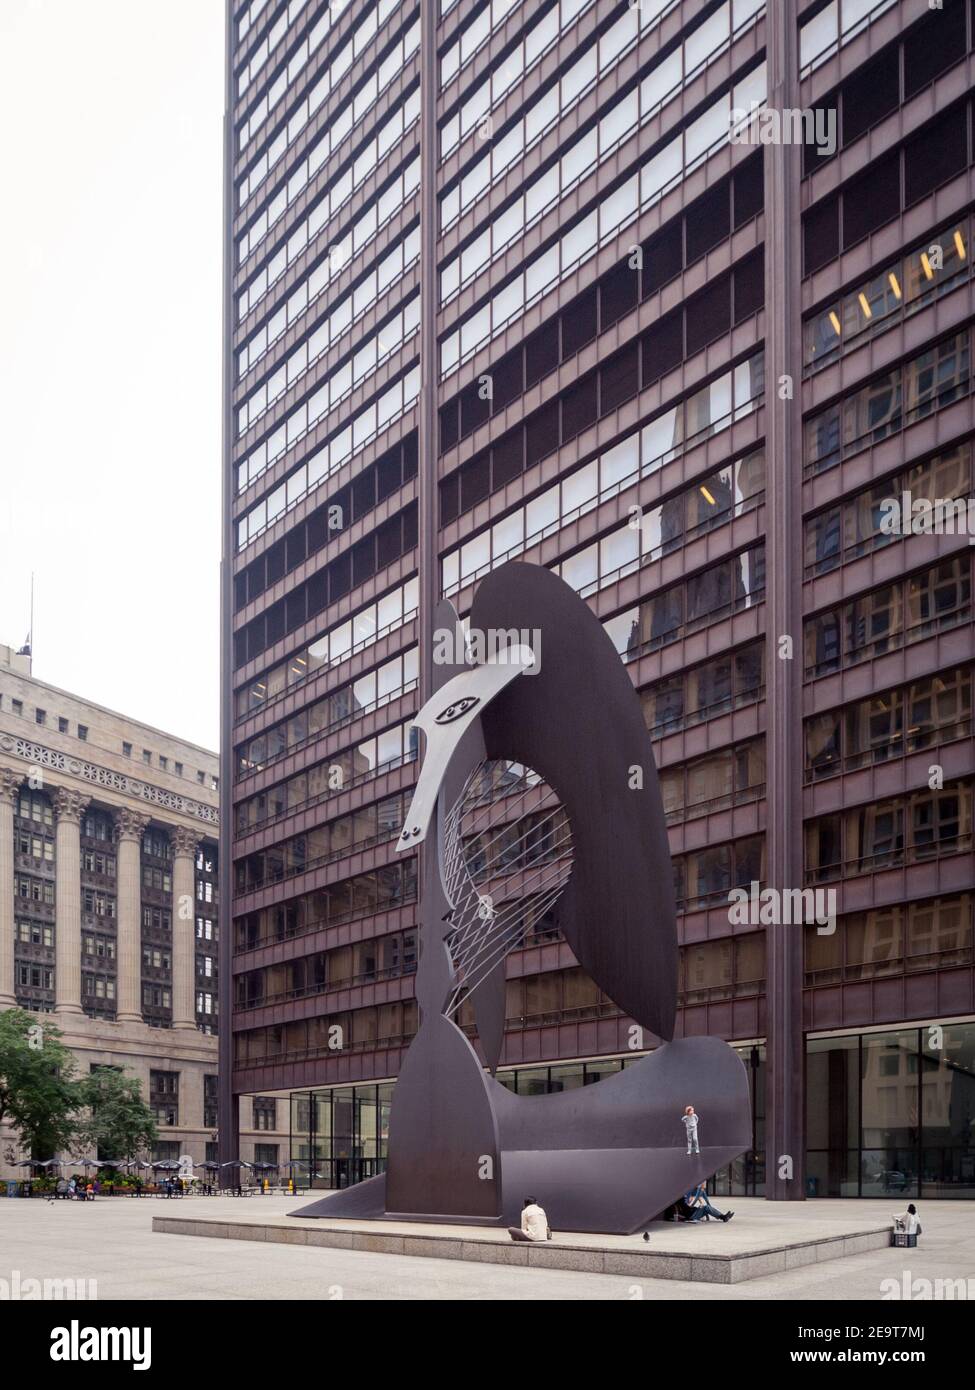 Le Chicago Picasso, un untitled sculpture monumentale de Pablo Picasso dans le centre-ville de Chicago, Illinois. Banque D'Images